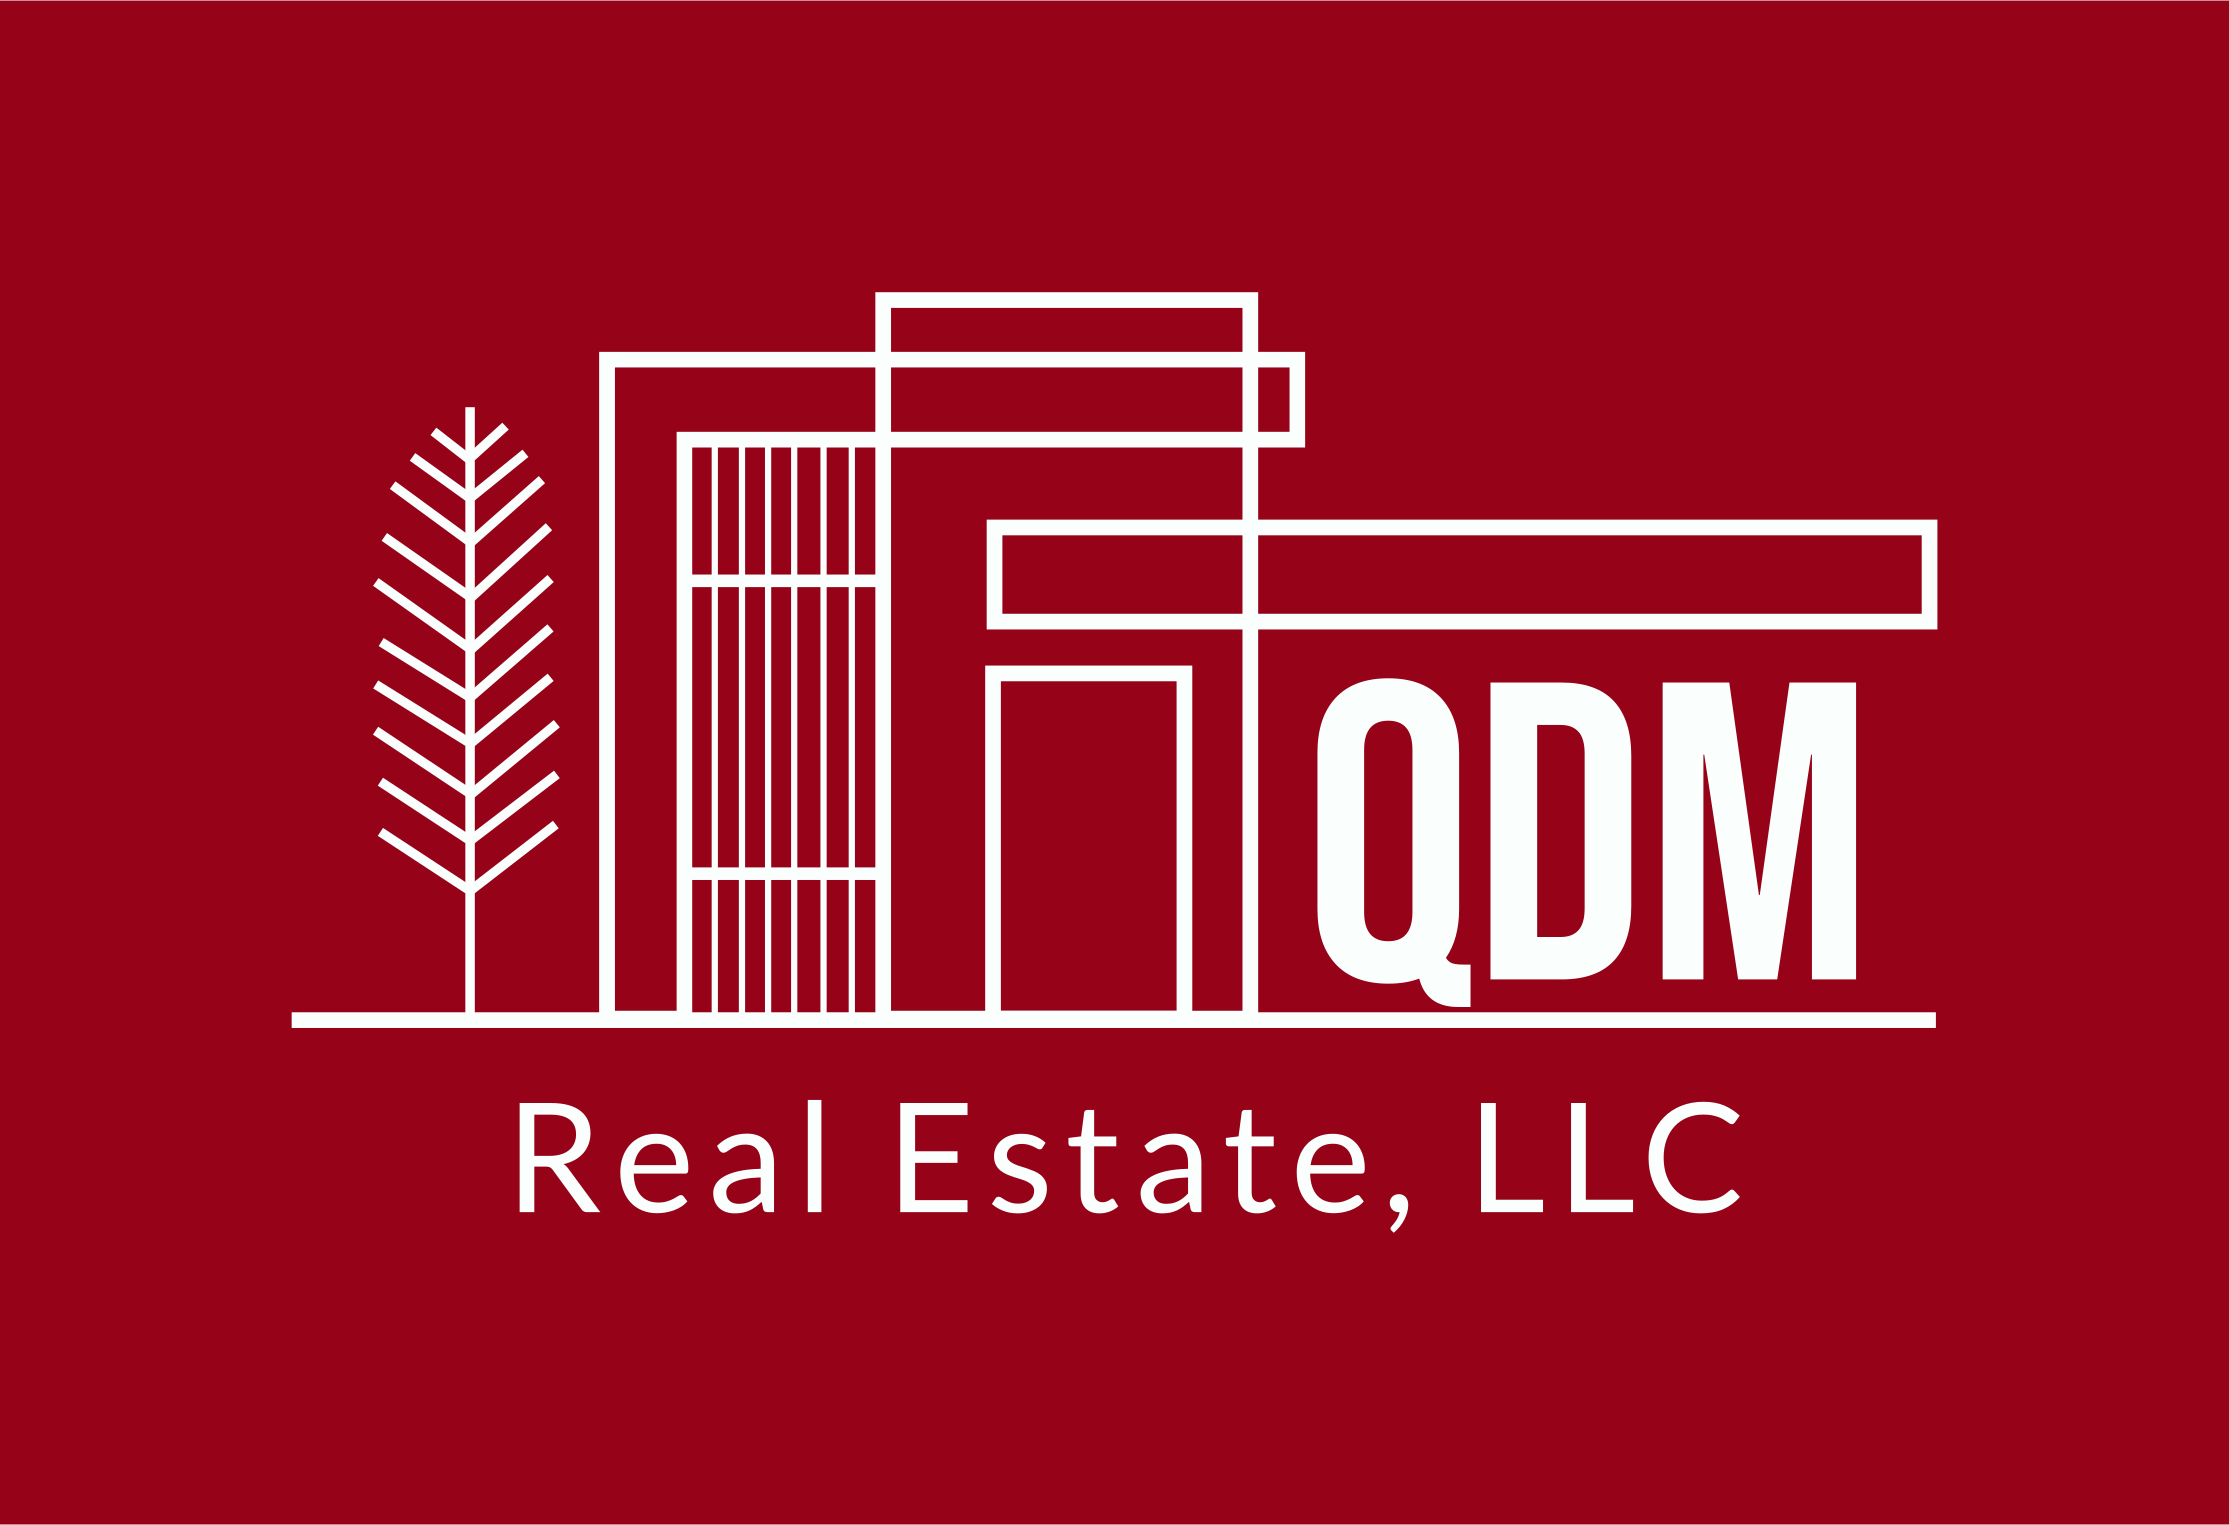 QDM Real Estate